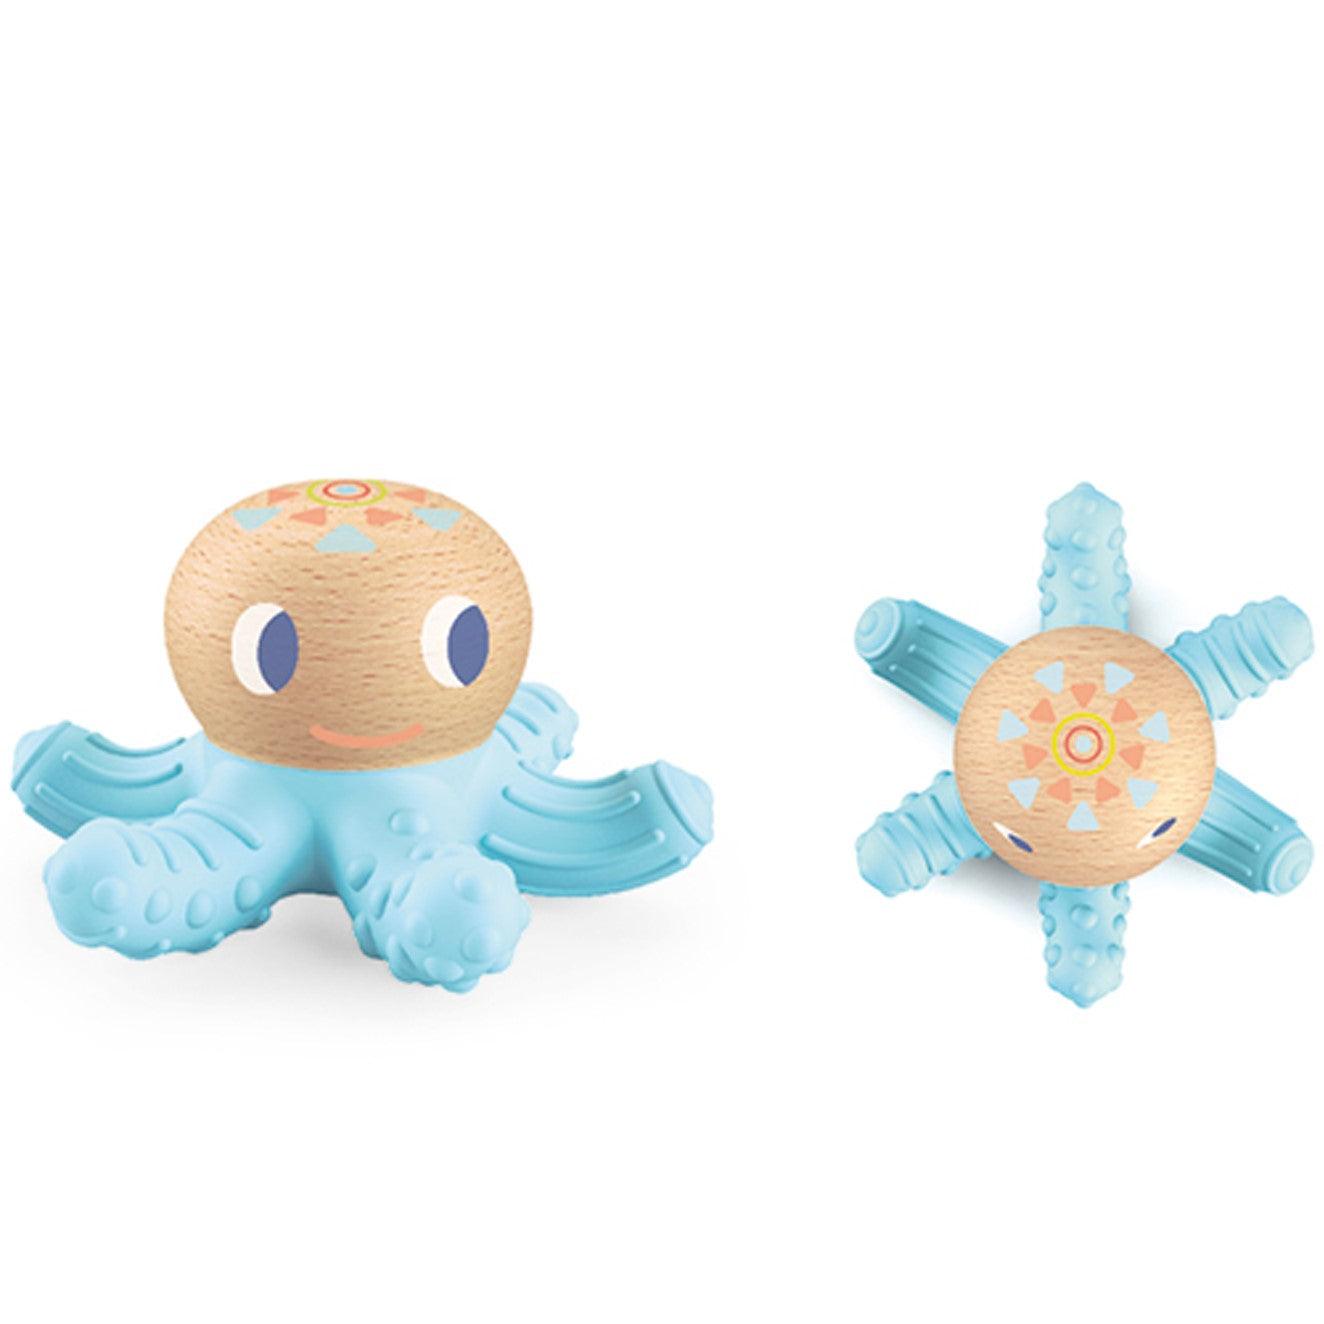 Djeco: Baby Squidi octopus teether